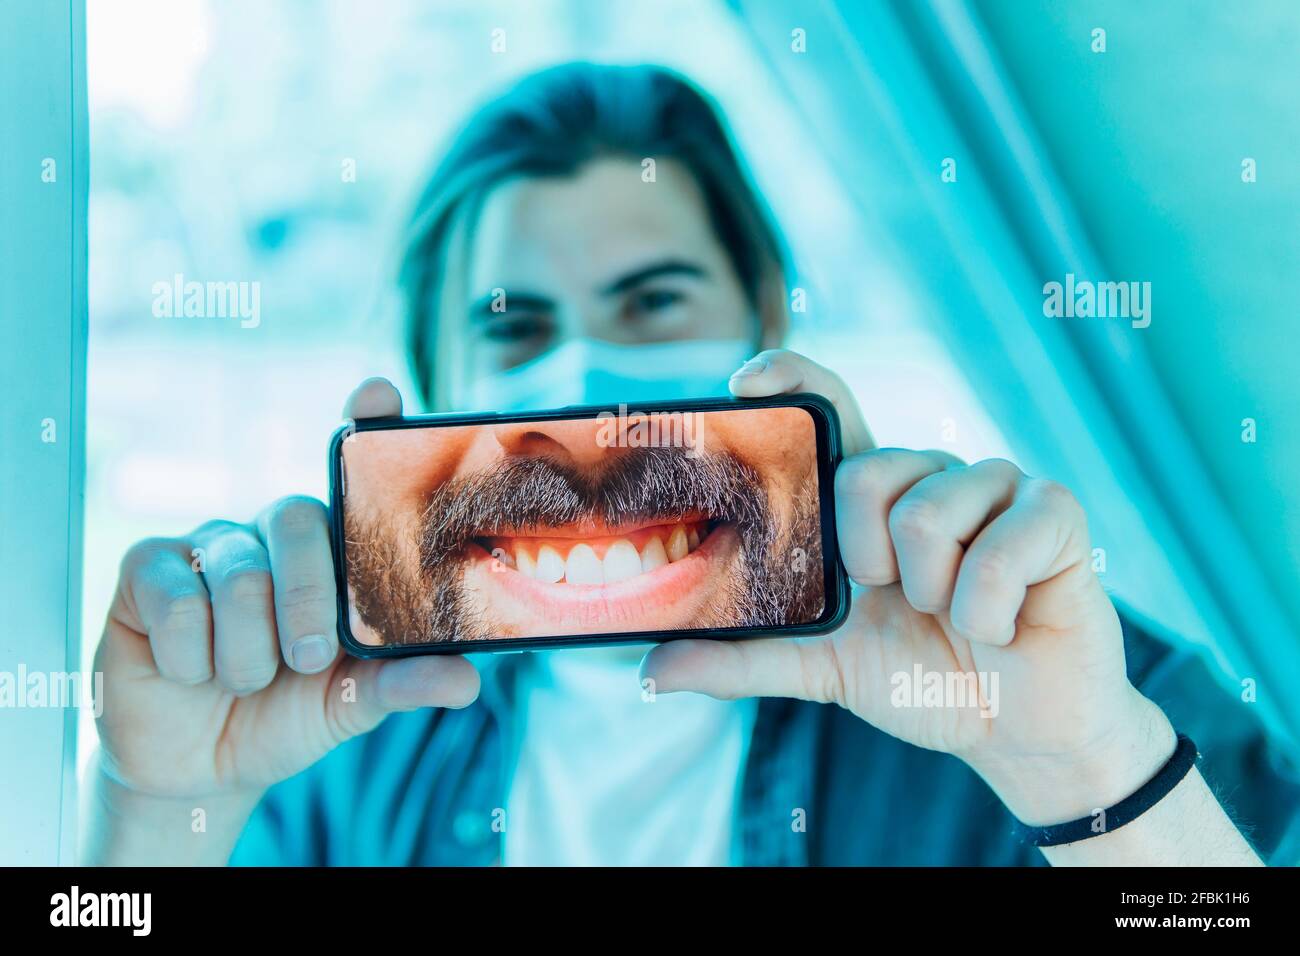 Jeune homme montrant un sourire crasseux sur un téléphone portable pendant le Covid-19 Banque D'Images